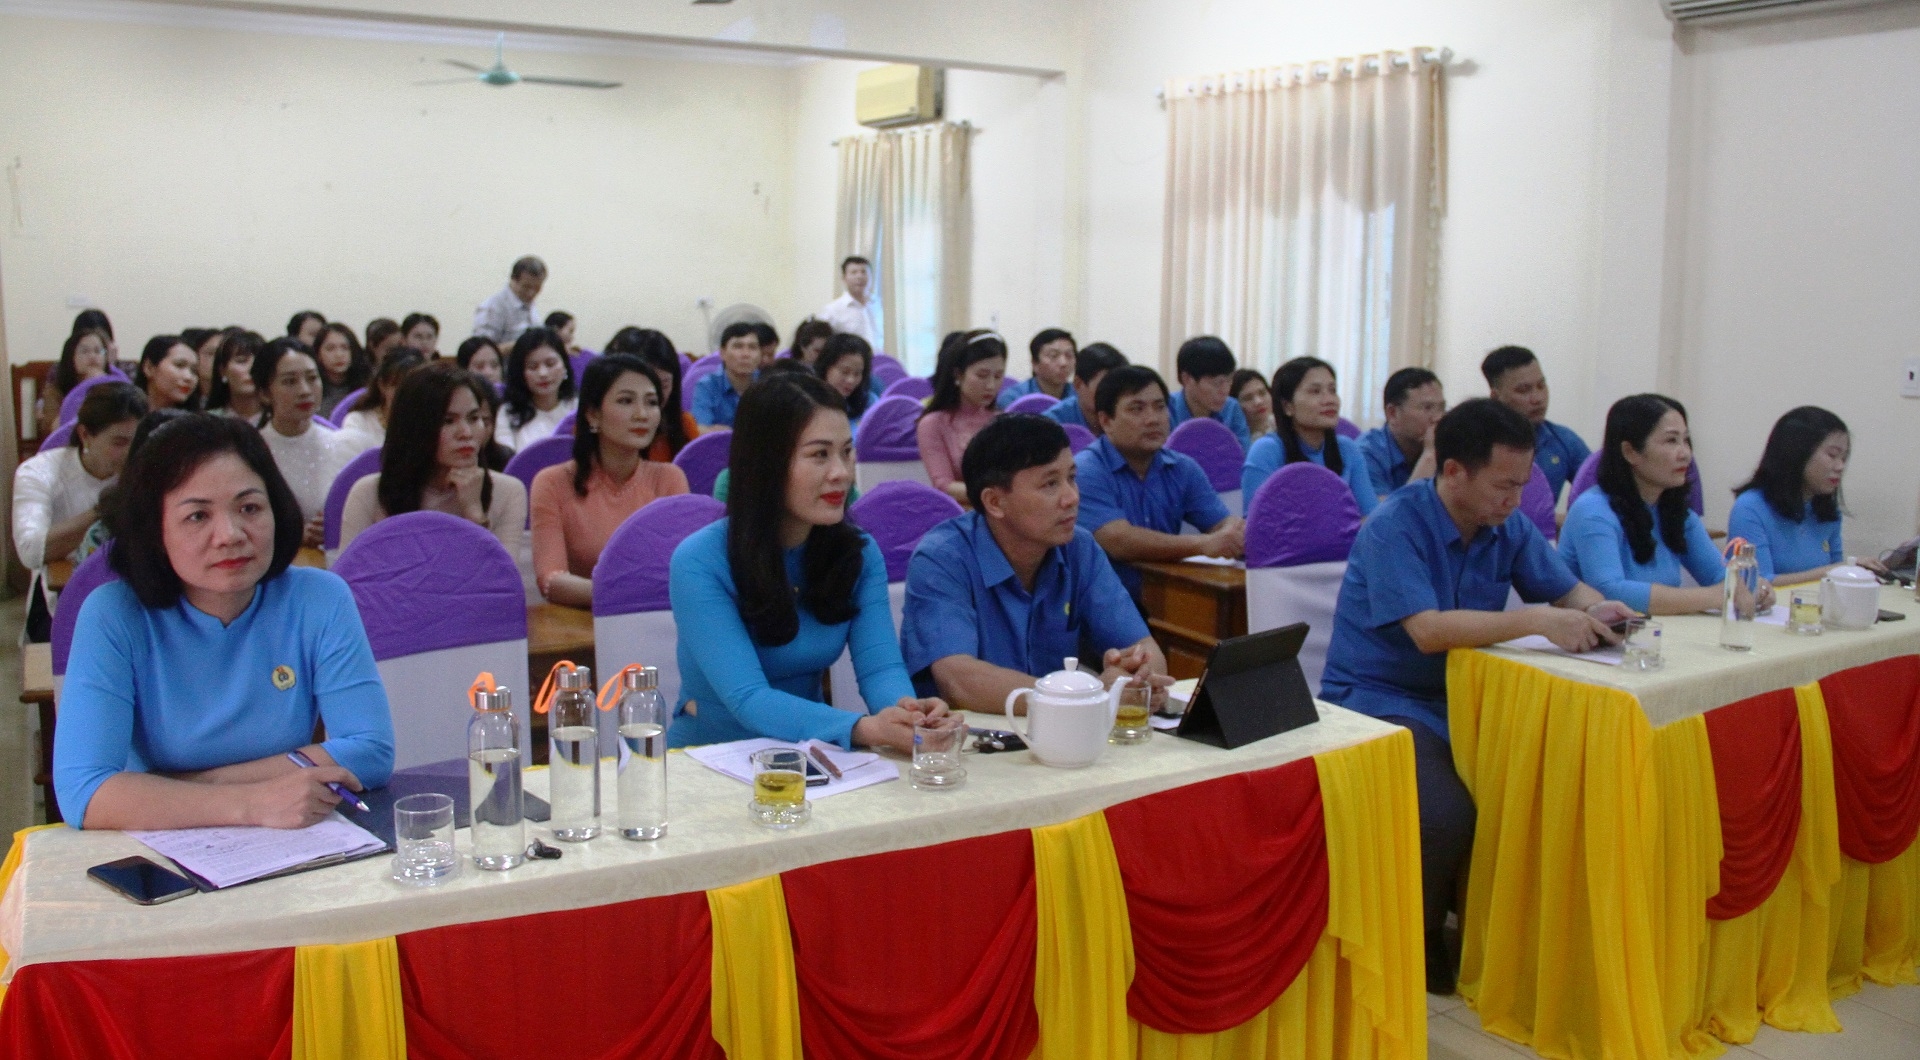 LĐLĐ tỉnh Hà Tĩnh gặp mặt và khen thưởng các thí sinh đạt giải tại các cuộc thi